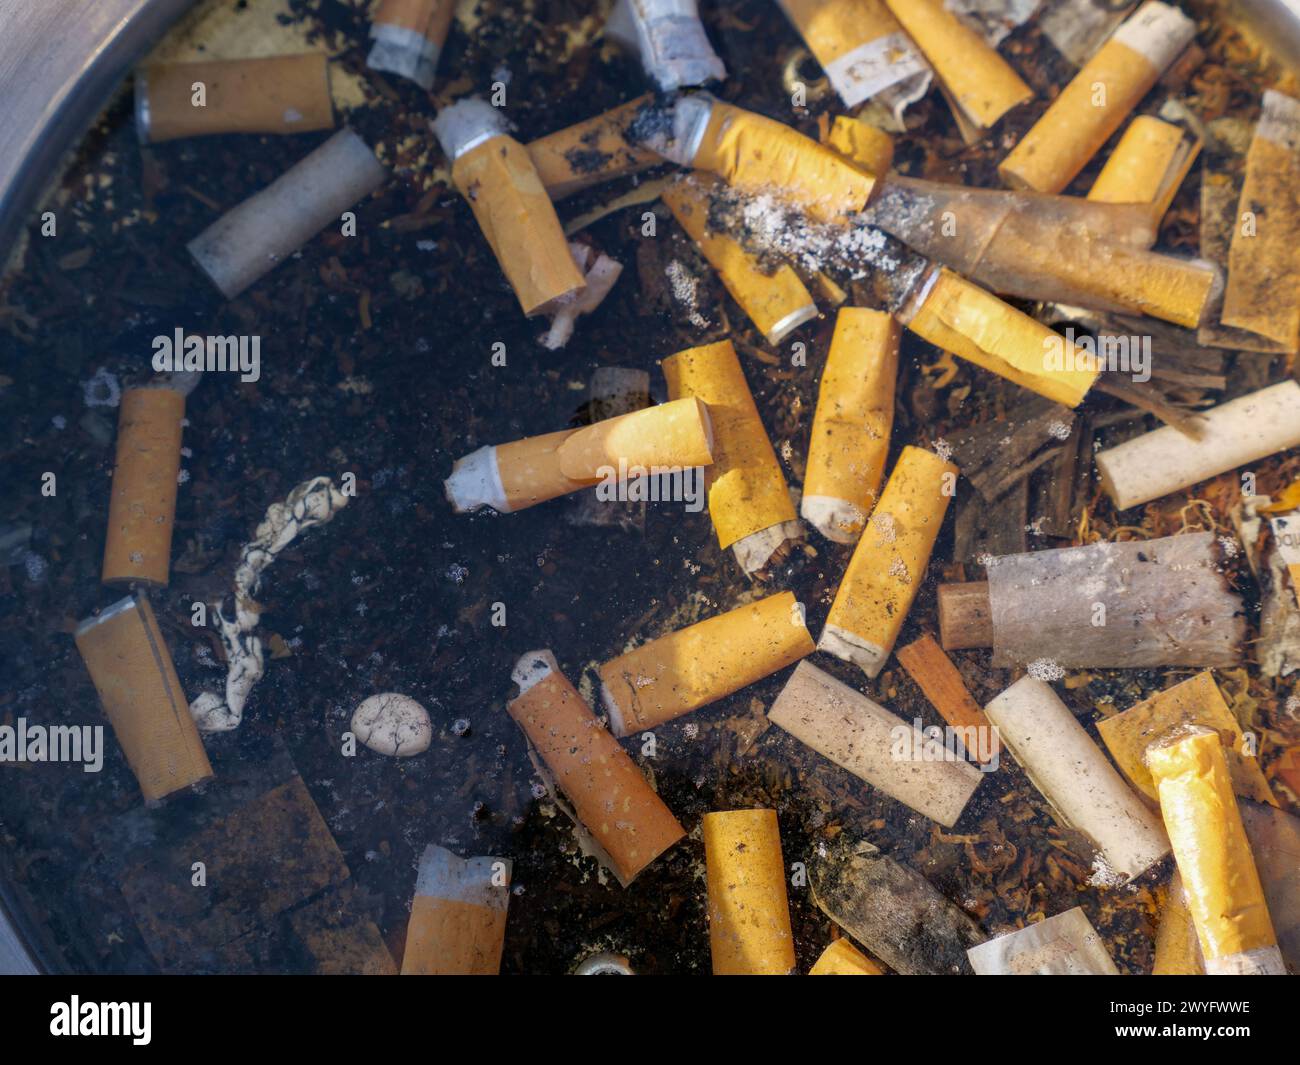 Mozziconi di sigaretta sul fondo del serbatoio dell'acqua. Stili di vita lettieri e malsani Foto Stock